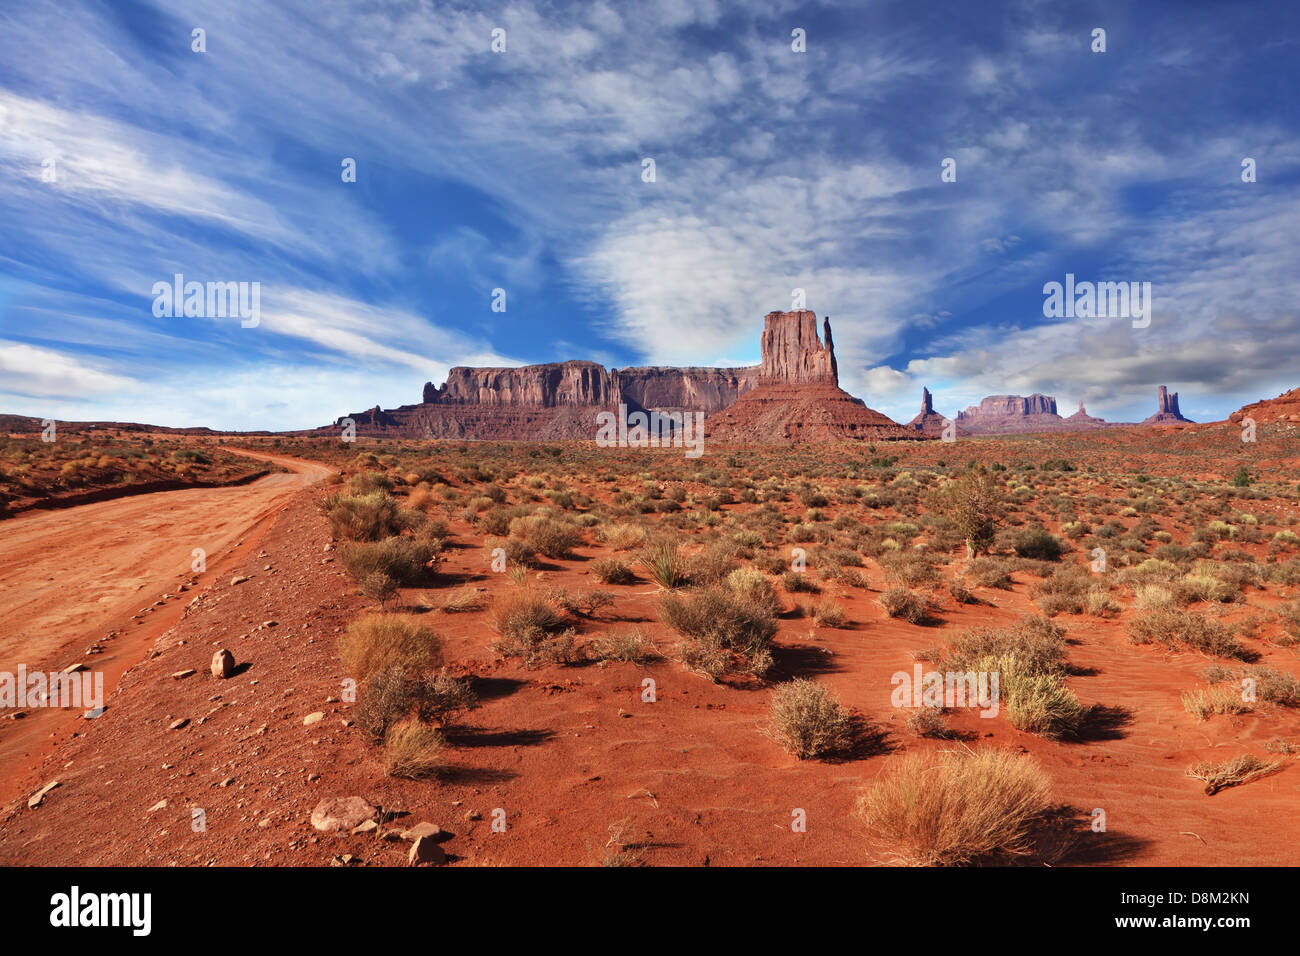 La reserva Navajo en los Estados Unidos. Foto de stock